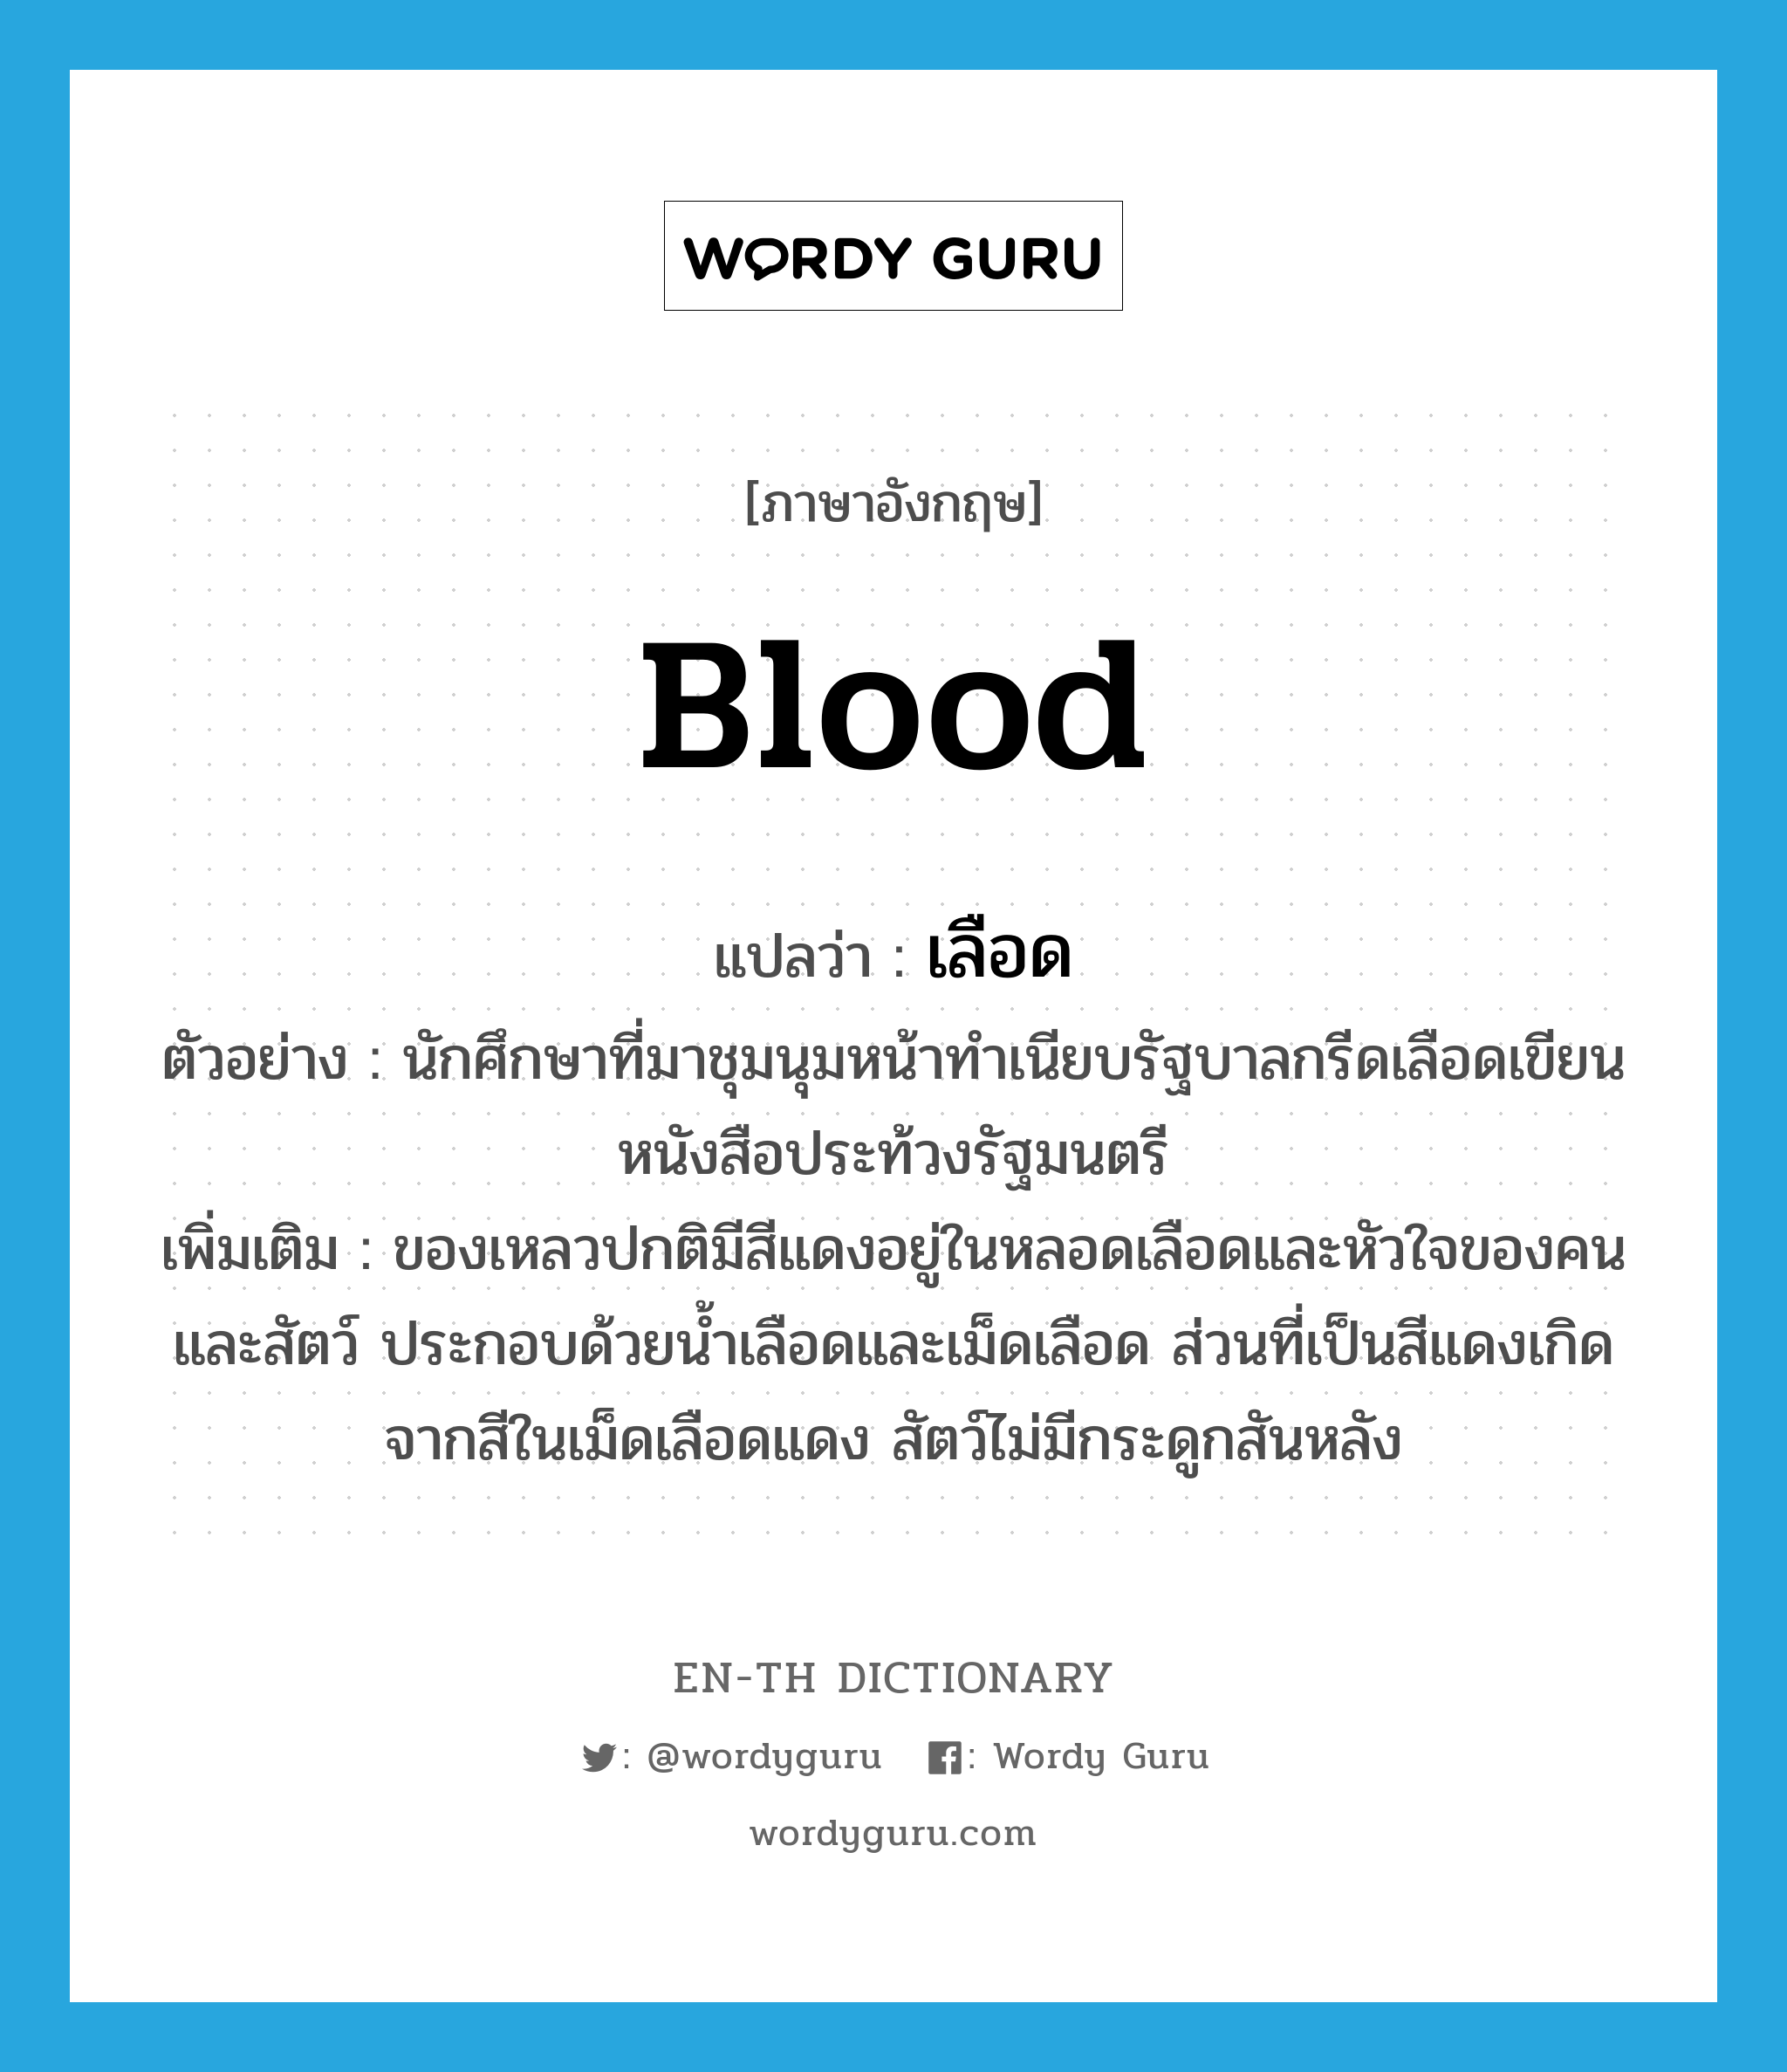 blood แปลว่า?, คำศัพท์ภาษาอังกฤษ blood แปลว่า เลือด ประเภท N ตัวอย่าง นักศึกษาที่มาชุมนุมหน้าทำเนียบรัฐบาลกรีดเลือดเขียนหนังสือประท้วงรัฐมนตรี เพิ่มเติม ของเหลวปกติมีสีแดงอยู่ในหลอดเลือดและหัวใจของคนและสัตว์ ประกอบด้วยน้ำเลือดและเม็ดเลือด ส่วนที่เป็นสีแดงเกิดจากสีในเม็ดเลือดแดง สัตว์ไม่มีกระดูกสันหลัง หมวด N